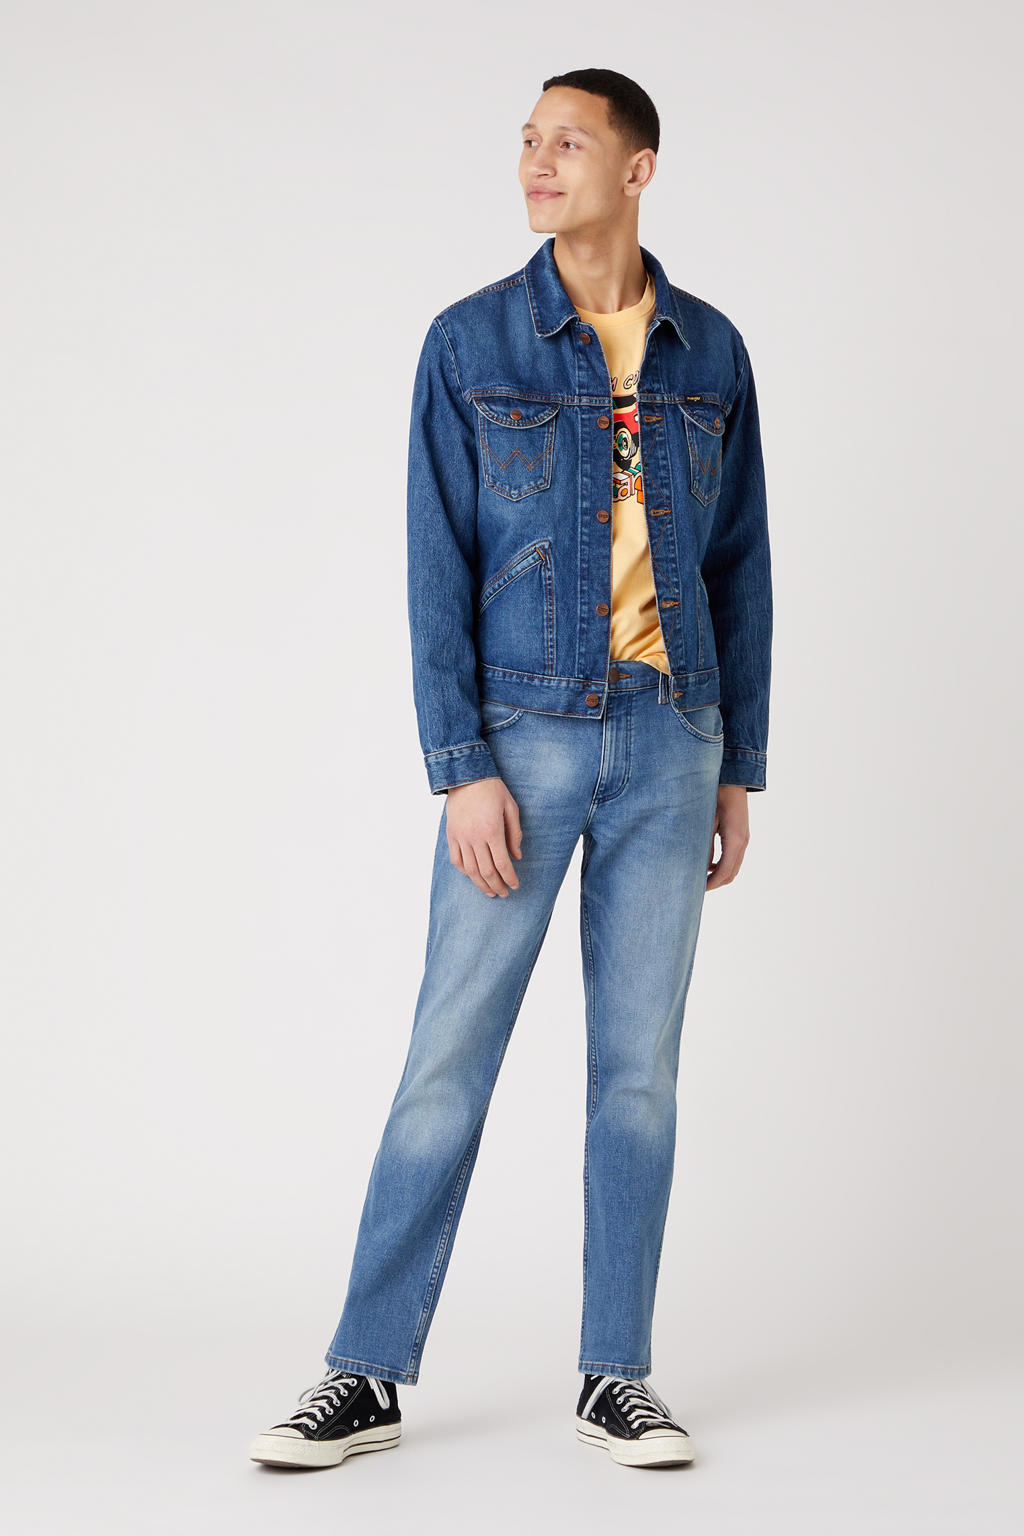 Wrangler regular fit jeans Greenboro blue fever